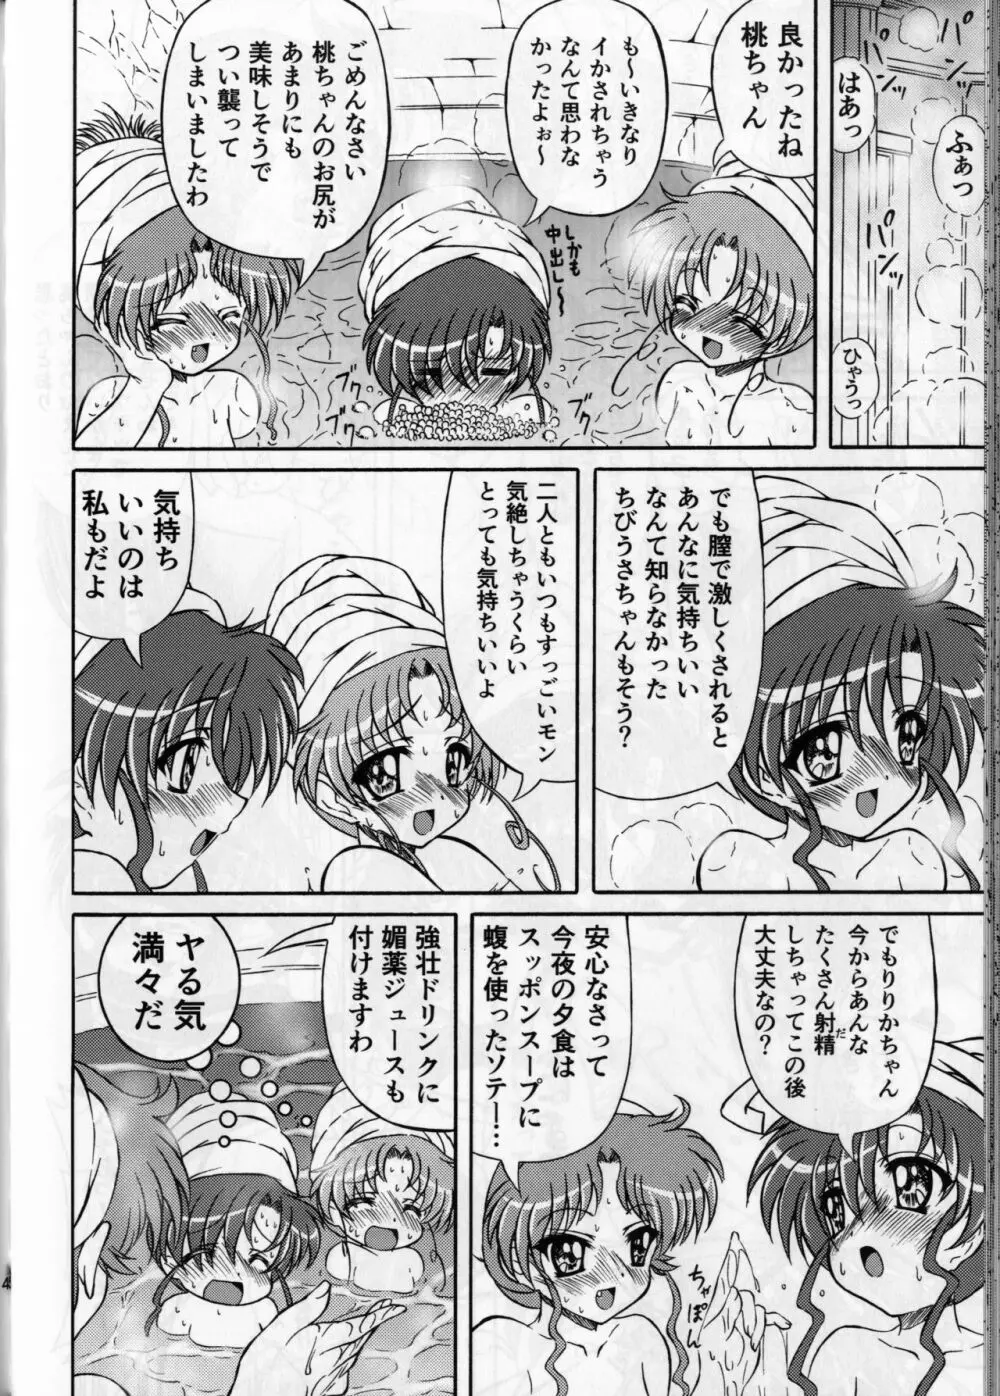 ぴんく・しゅがぁ 20th Anniversary Special 44ページ